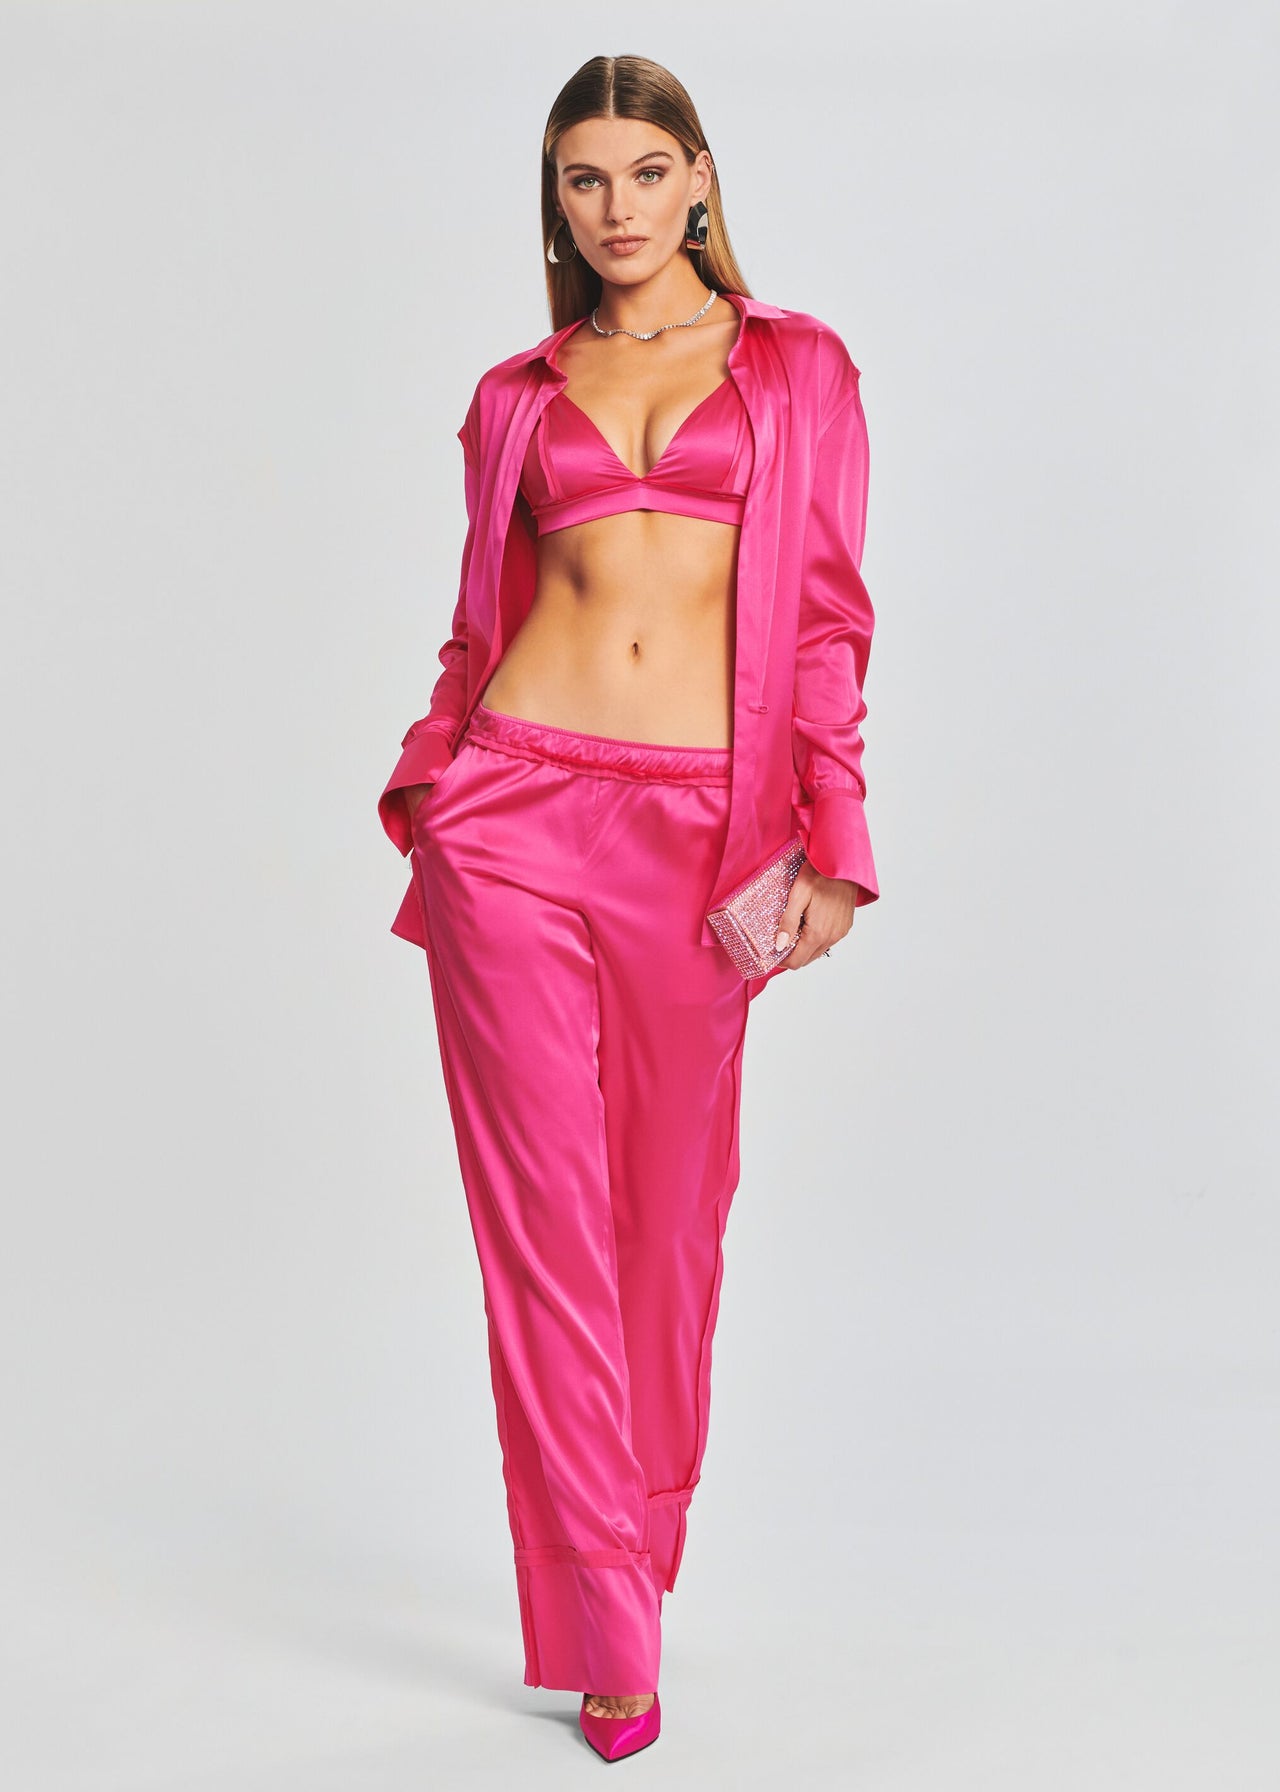 Zara silk satin crop top bralette - pink